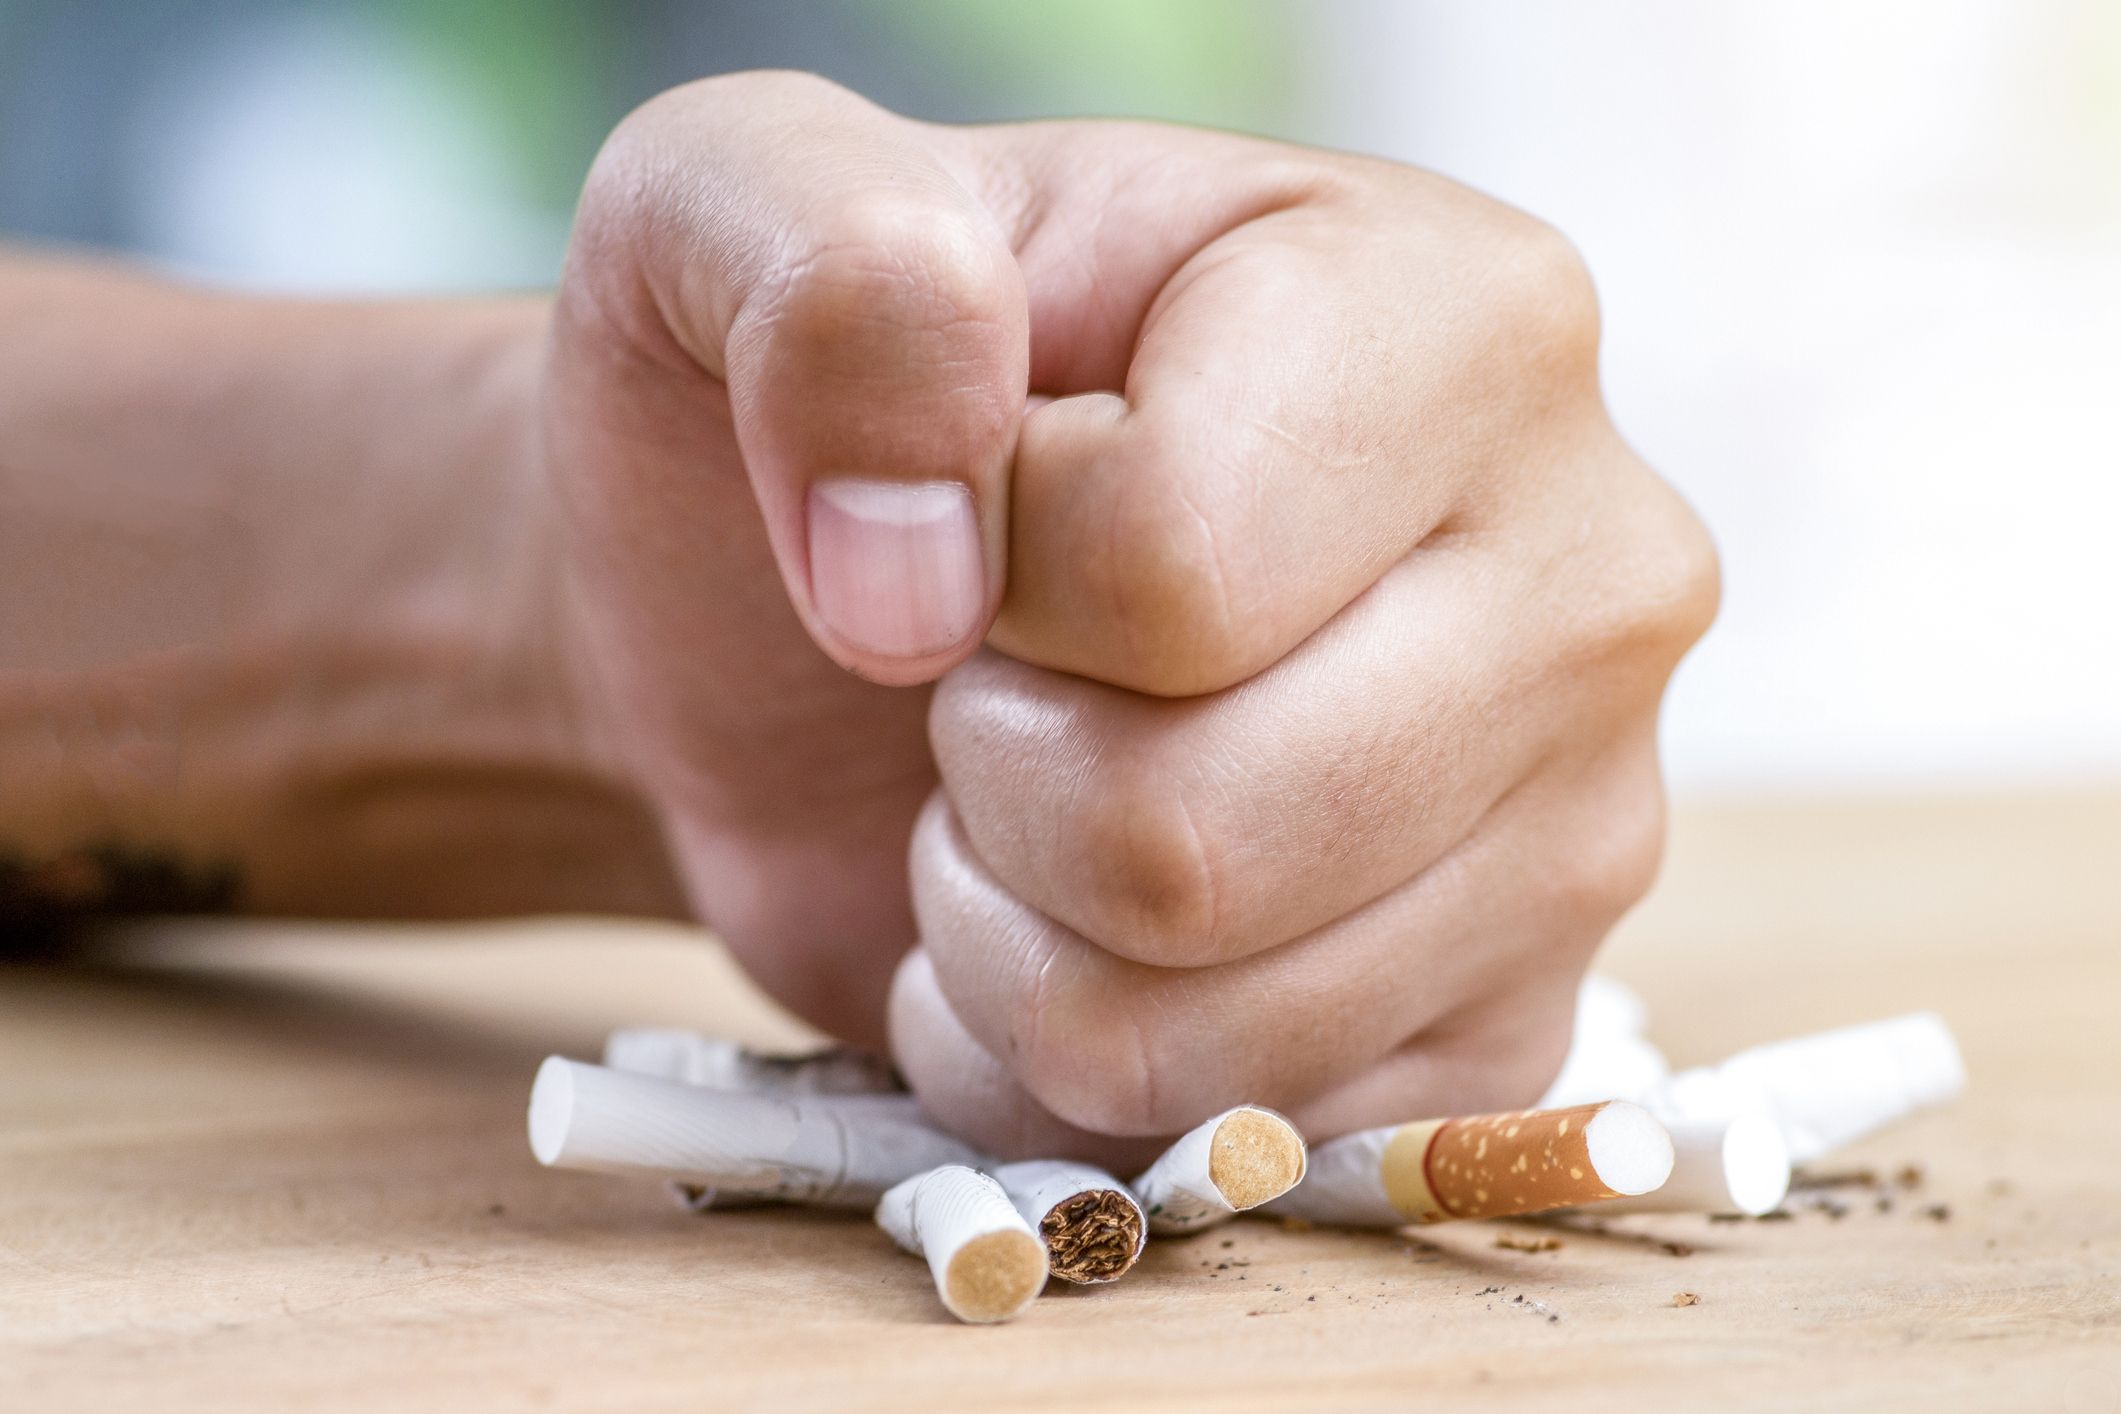 Geneeskunde En scherp Stoppen met roken: alles wat je over afkicken moet weten